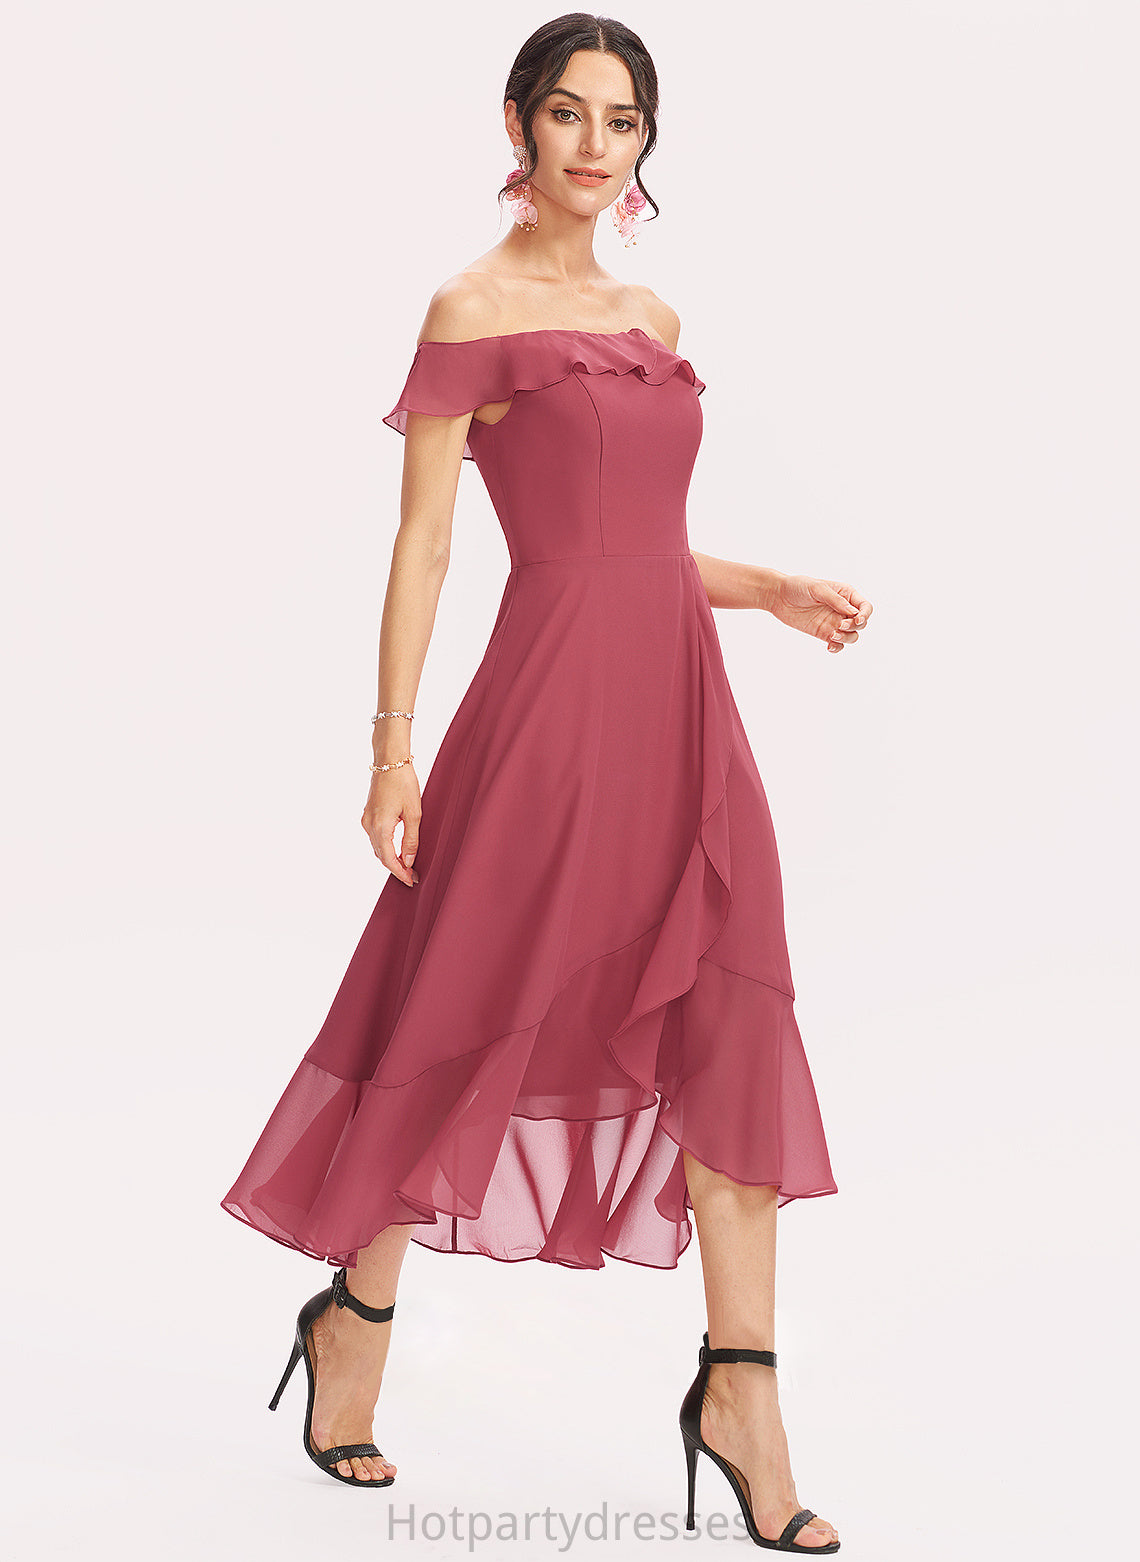 Silhouette Neckline CascadingRuffles Off-the-Shoulder Tea-Length A-Line Embellishment Length Fabric Trinity A-Line/Princess Sleeveless Bridesmaid Dresses